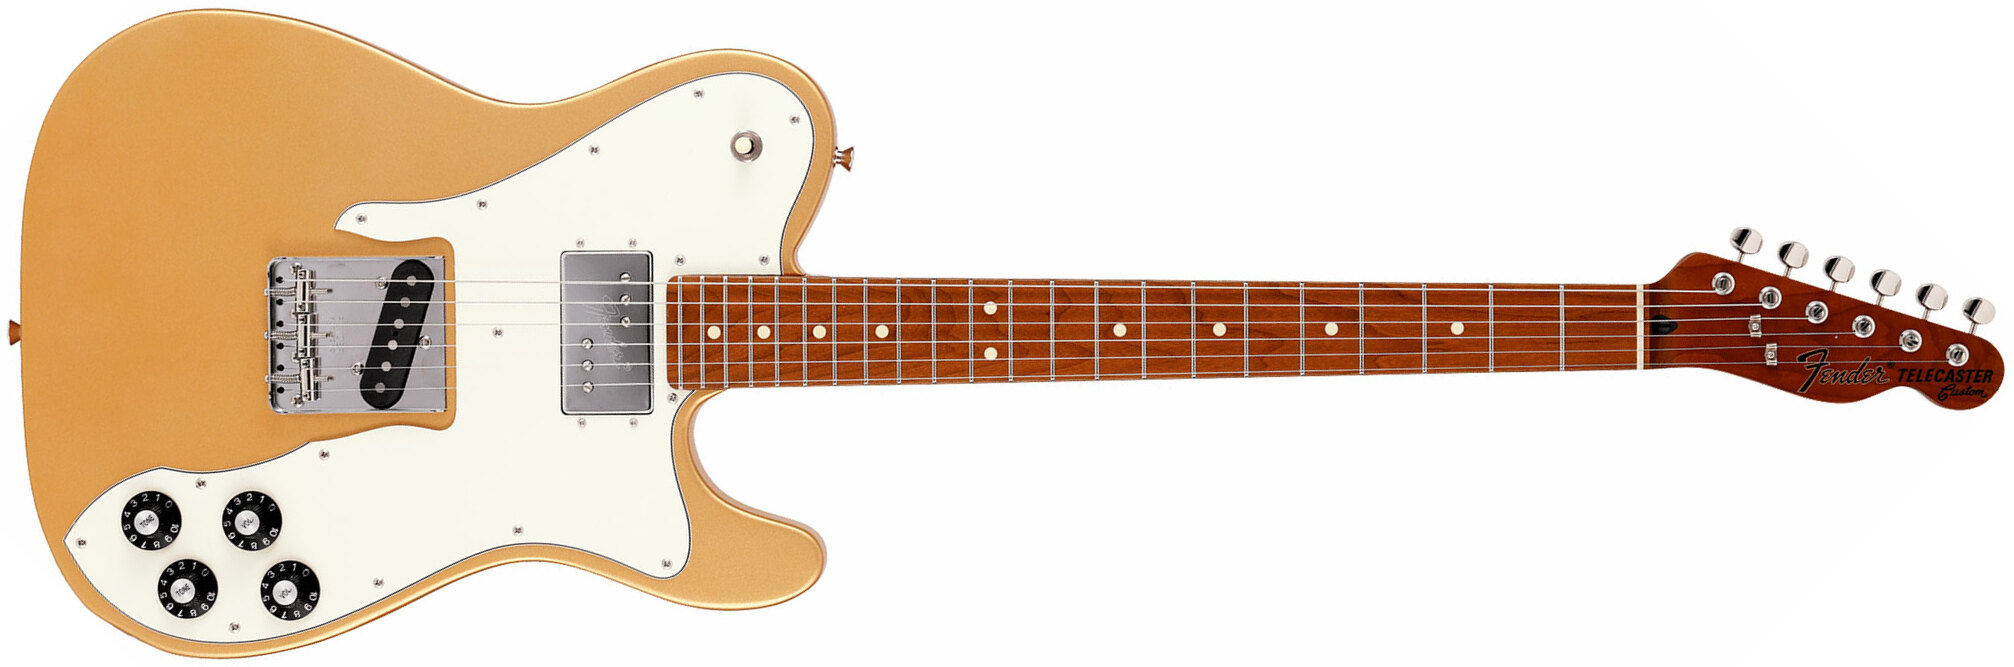 Fender Tele Hybrid Custom Jap Ltd Ht Hs Mn - Gold - Televorm elektrische gitaar - Main picture